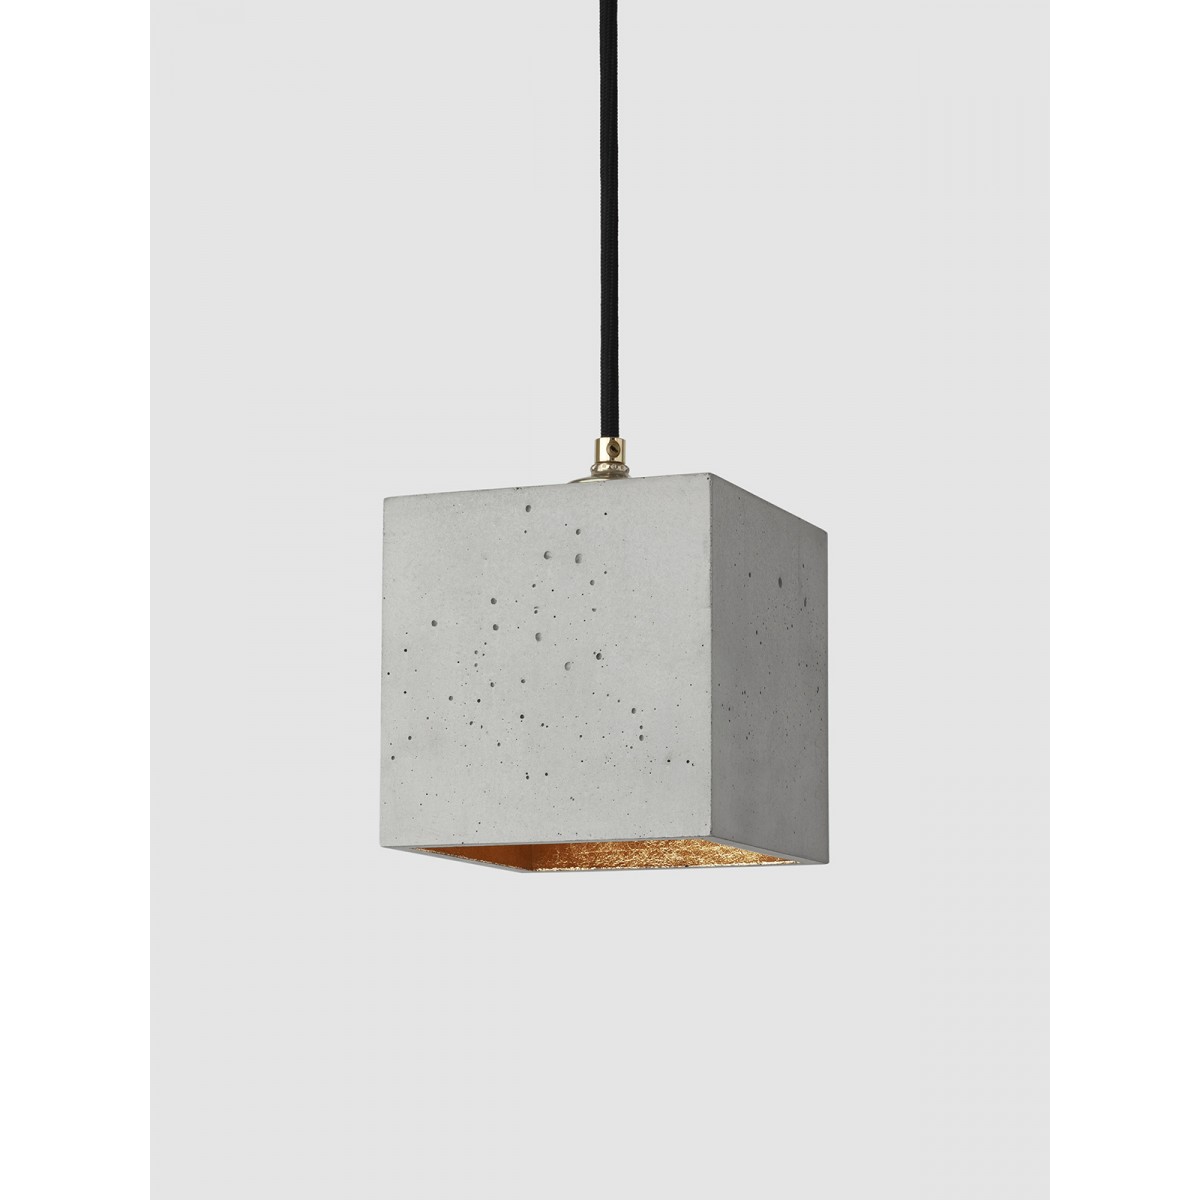 GANTlights - Beton Hängelampe [B1] Lampe Gold minimalistisch